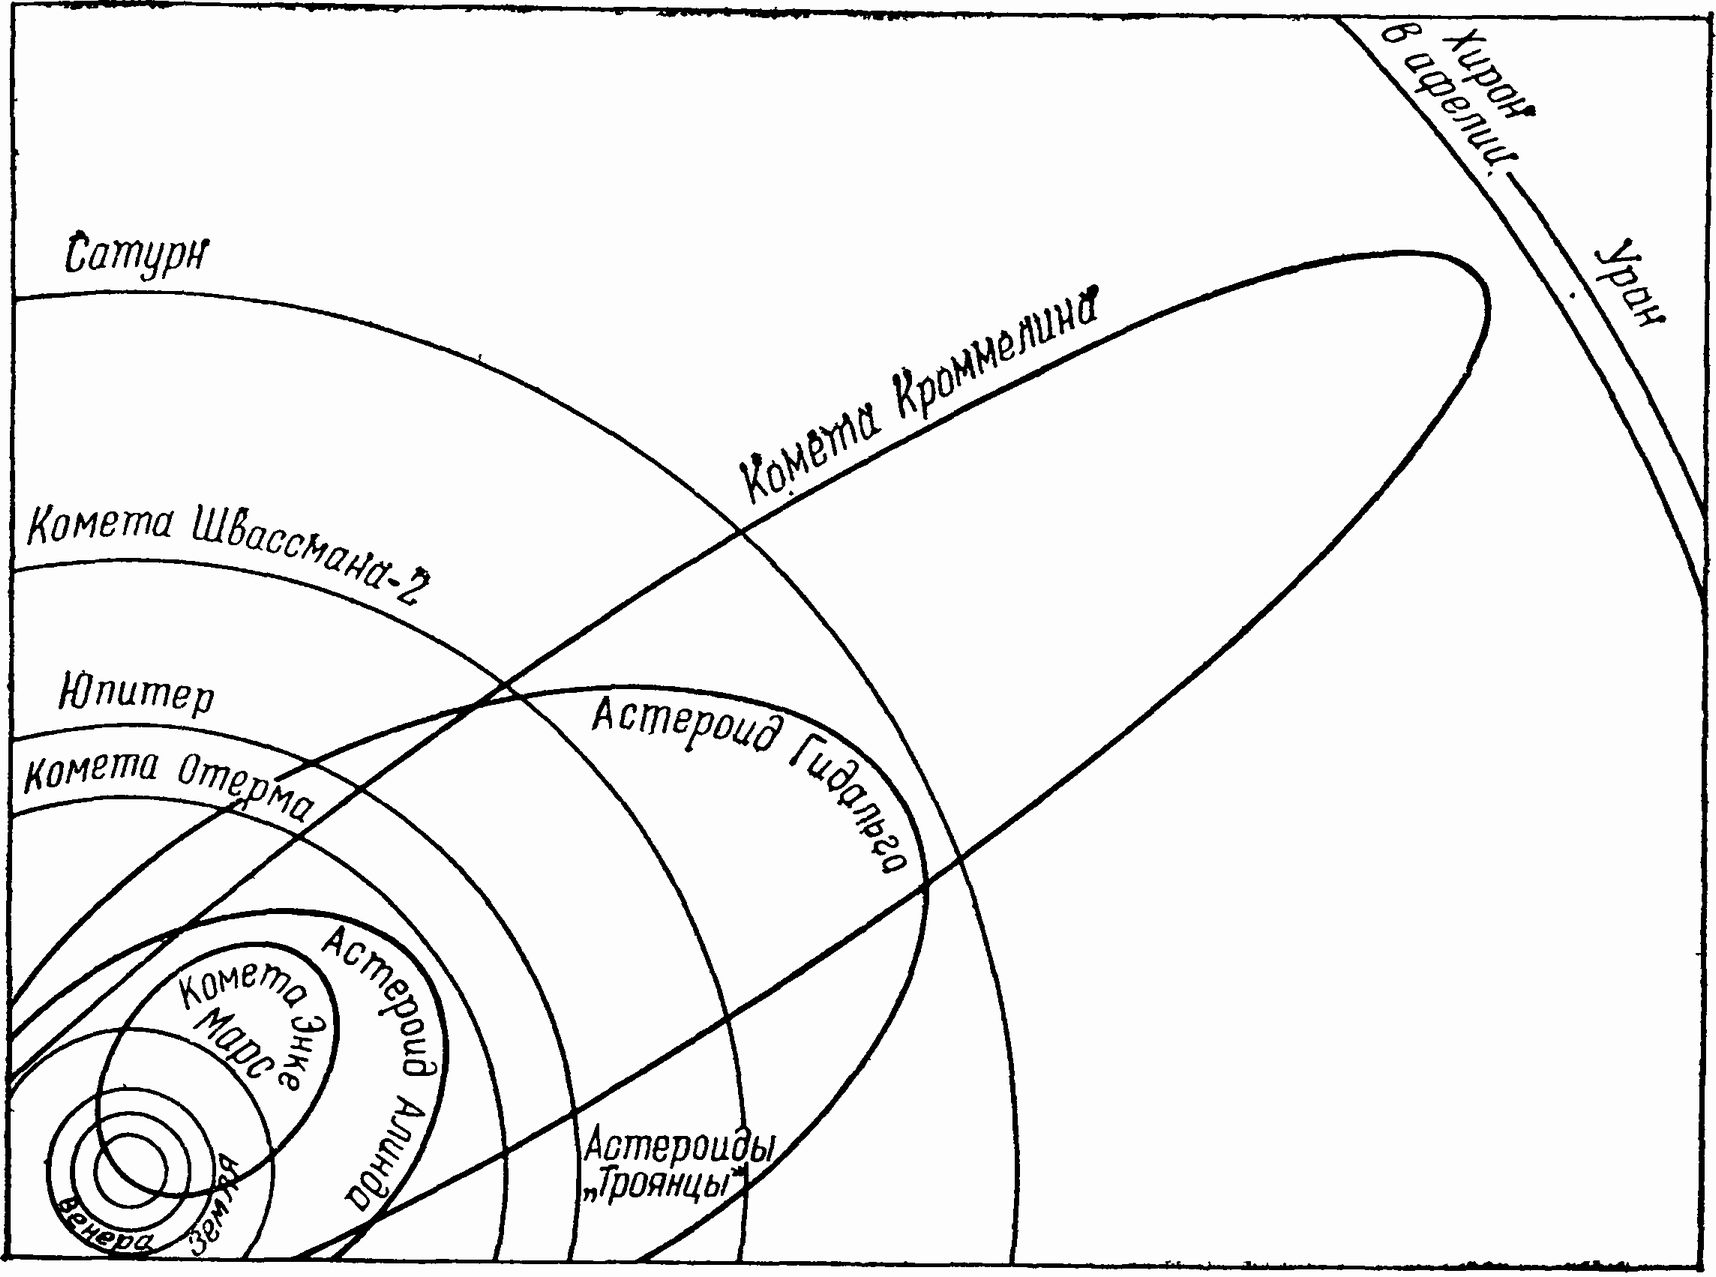 Рис. 17. Орбиты некоторых комет и астероидов, для удобства сведенные в один квадрант